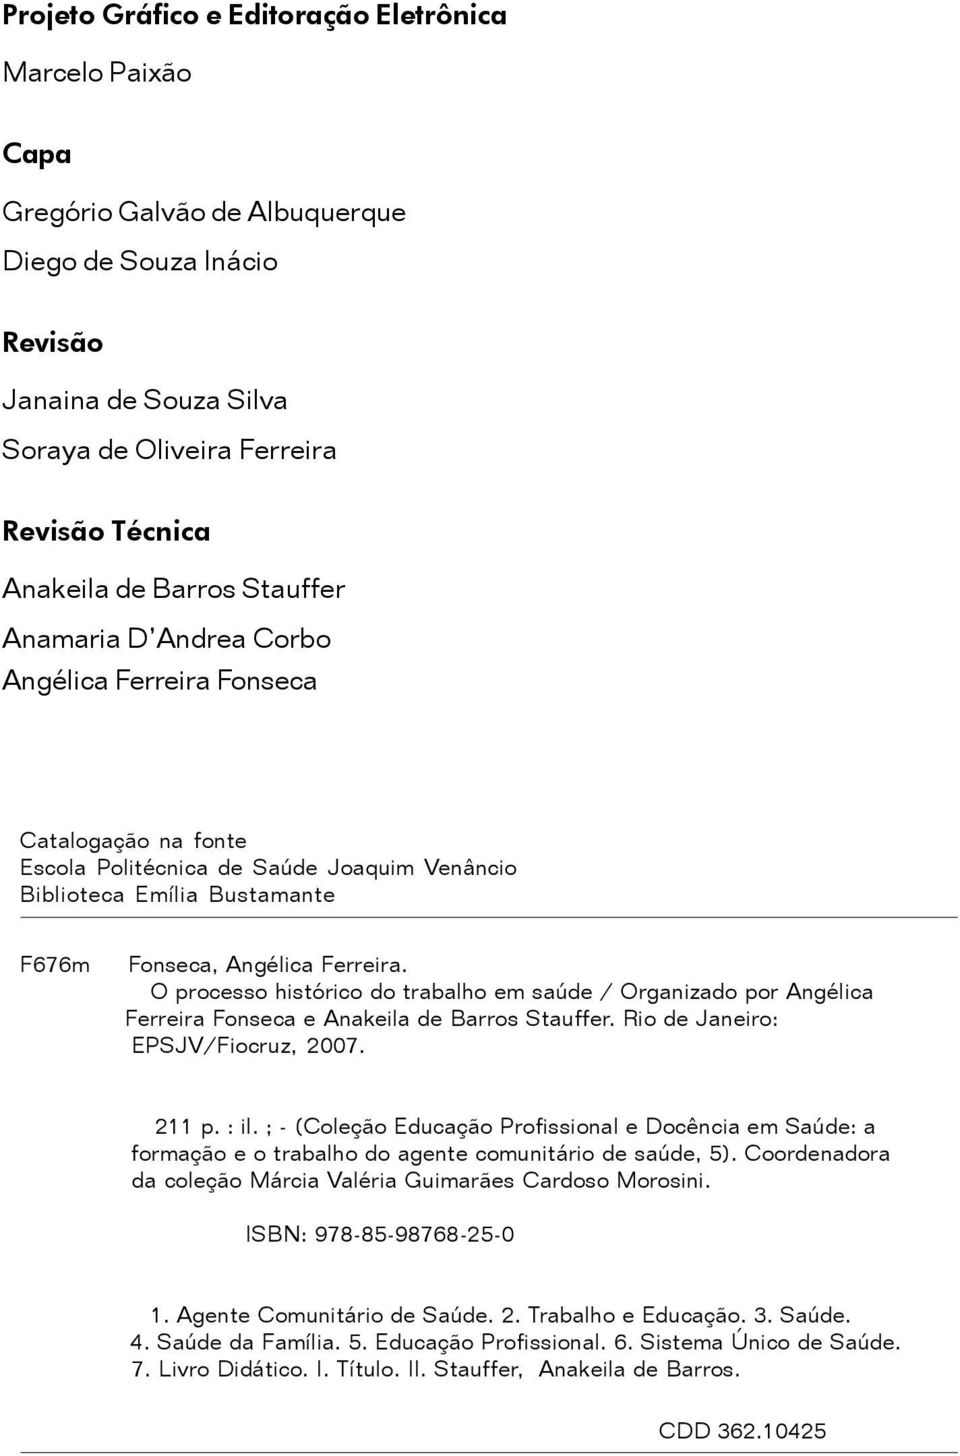 O processo histórico do trabalho em saúde / Organizado por Angélica Ferreira Fonseca e Anakeila de Barros Stauffer. Rio de Janeiro: EPSJV/Fiocruz, 2007. 211 p. : il.